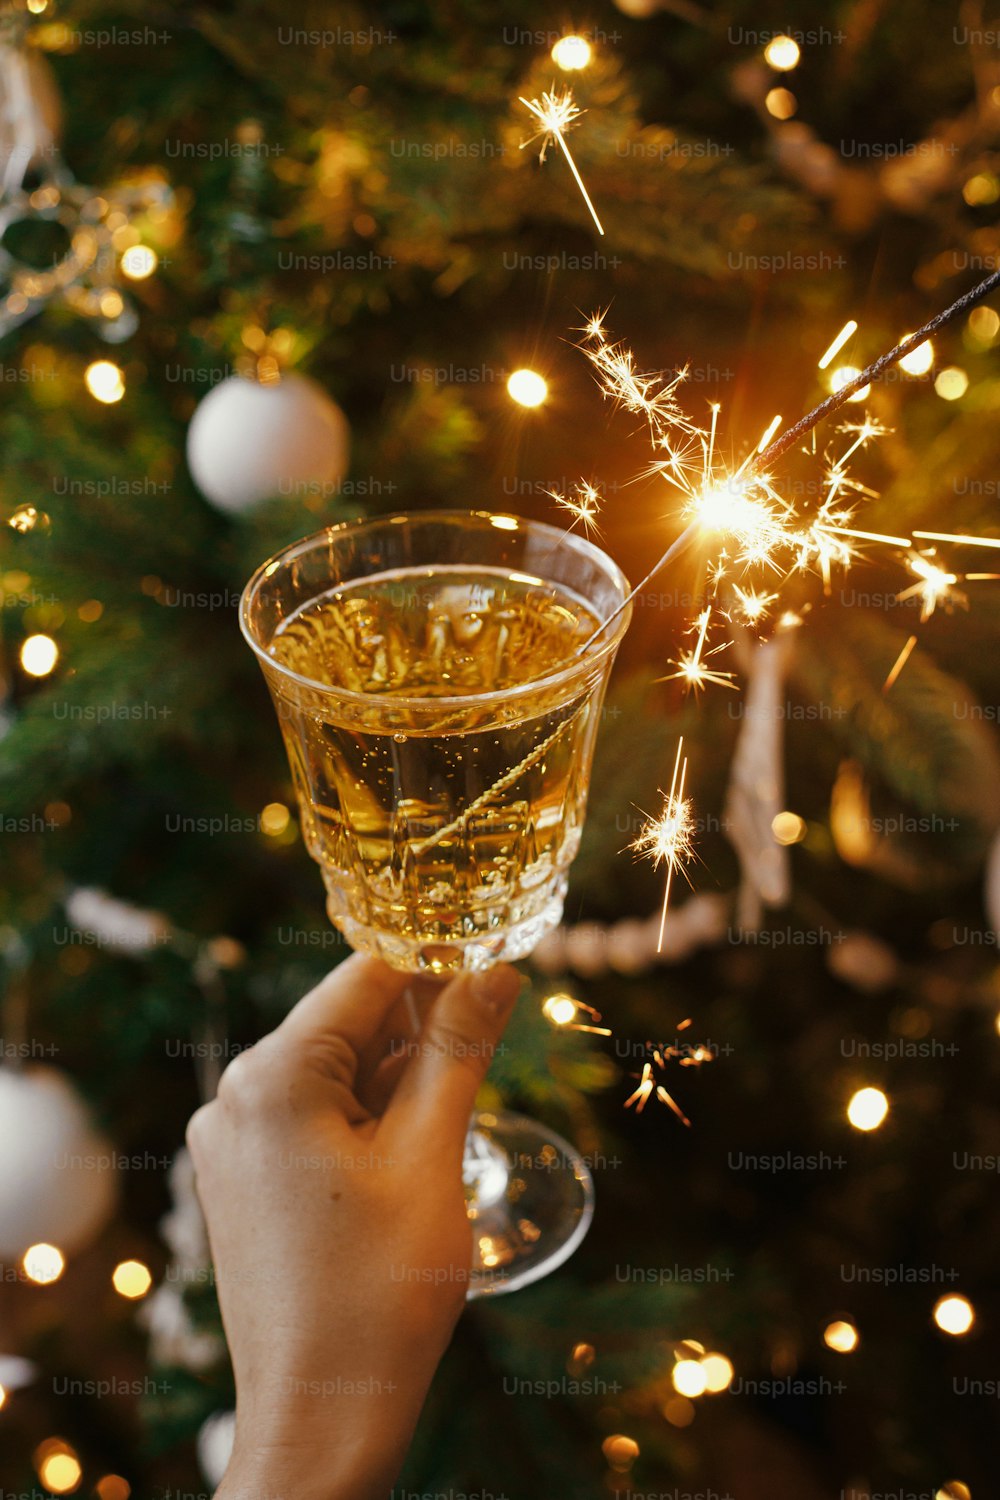 크리스마스 트리 조명을 배경으로 샴페인 잔에 불꽃놀이 빛으로 축하하는 여자. 새해 복 많이 받으세요! 스칸디나비아 방에서 불타는 폭죽과 음료를 들고 있는 손. 대기 순간